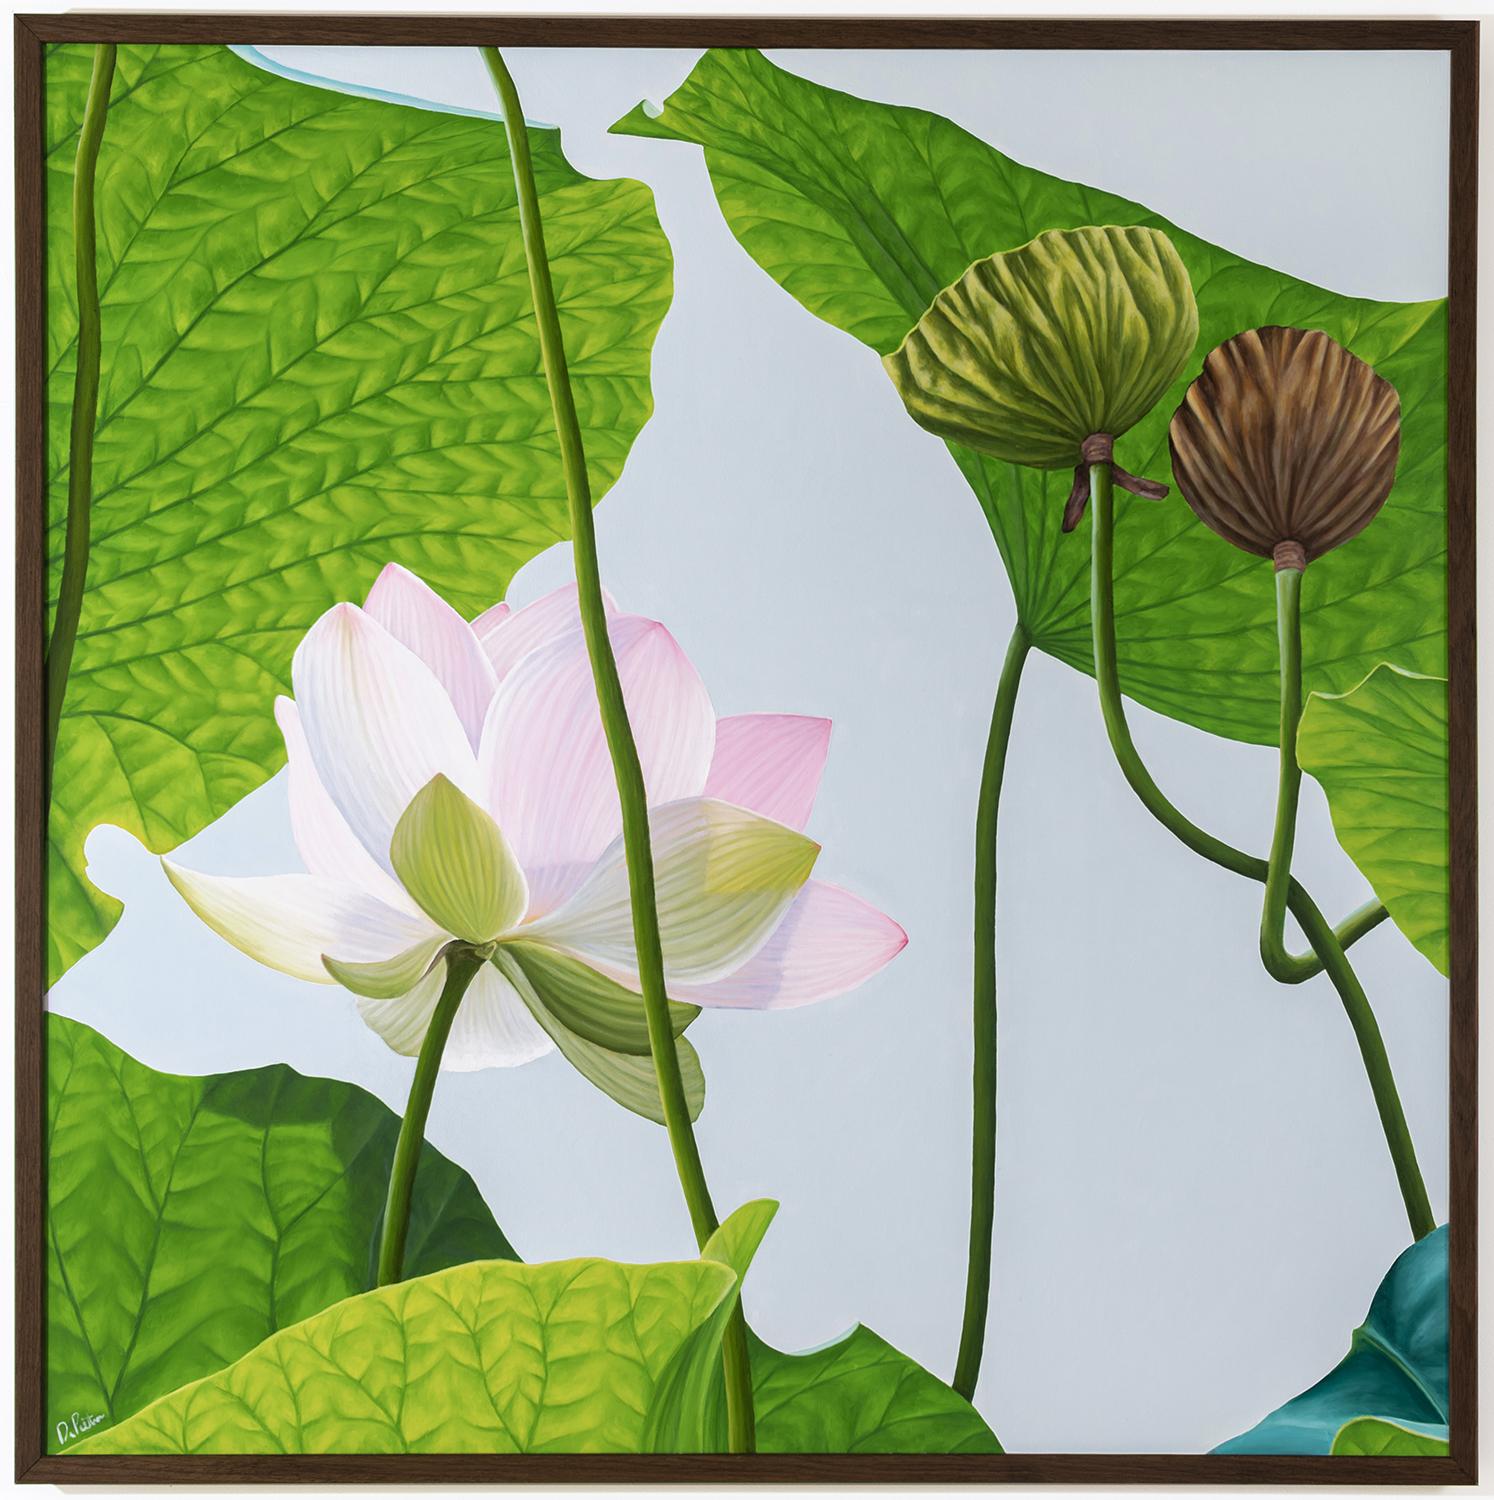 Lotus n° 65 (Peinture de nature morte photoréaliste de lotus roses et vertes) - Painting de Frank DePietro